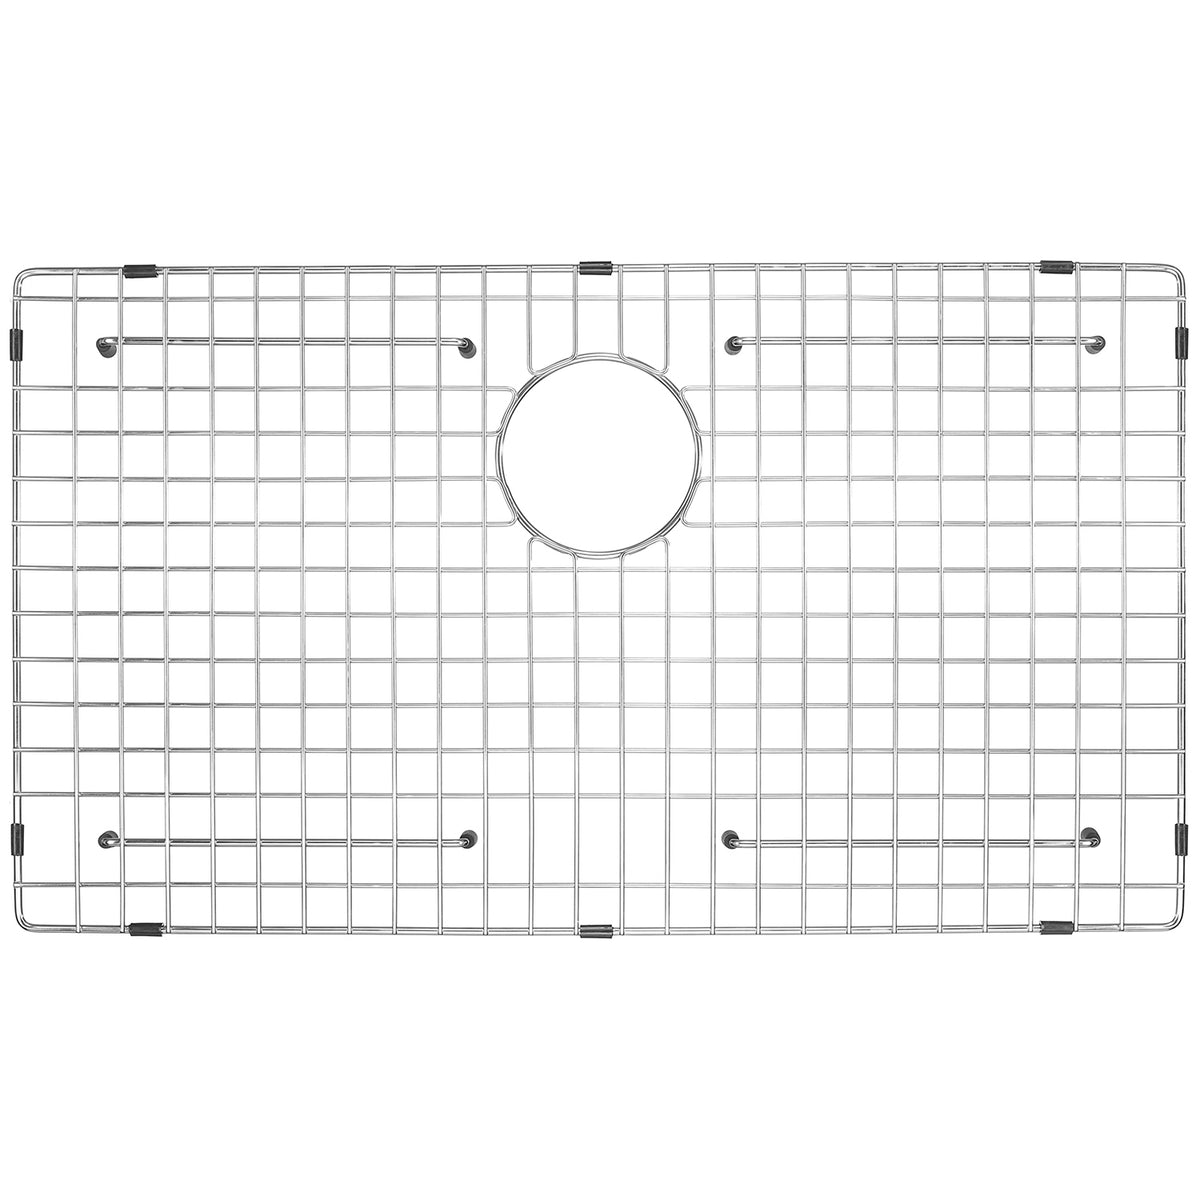 custom size sink grid